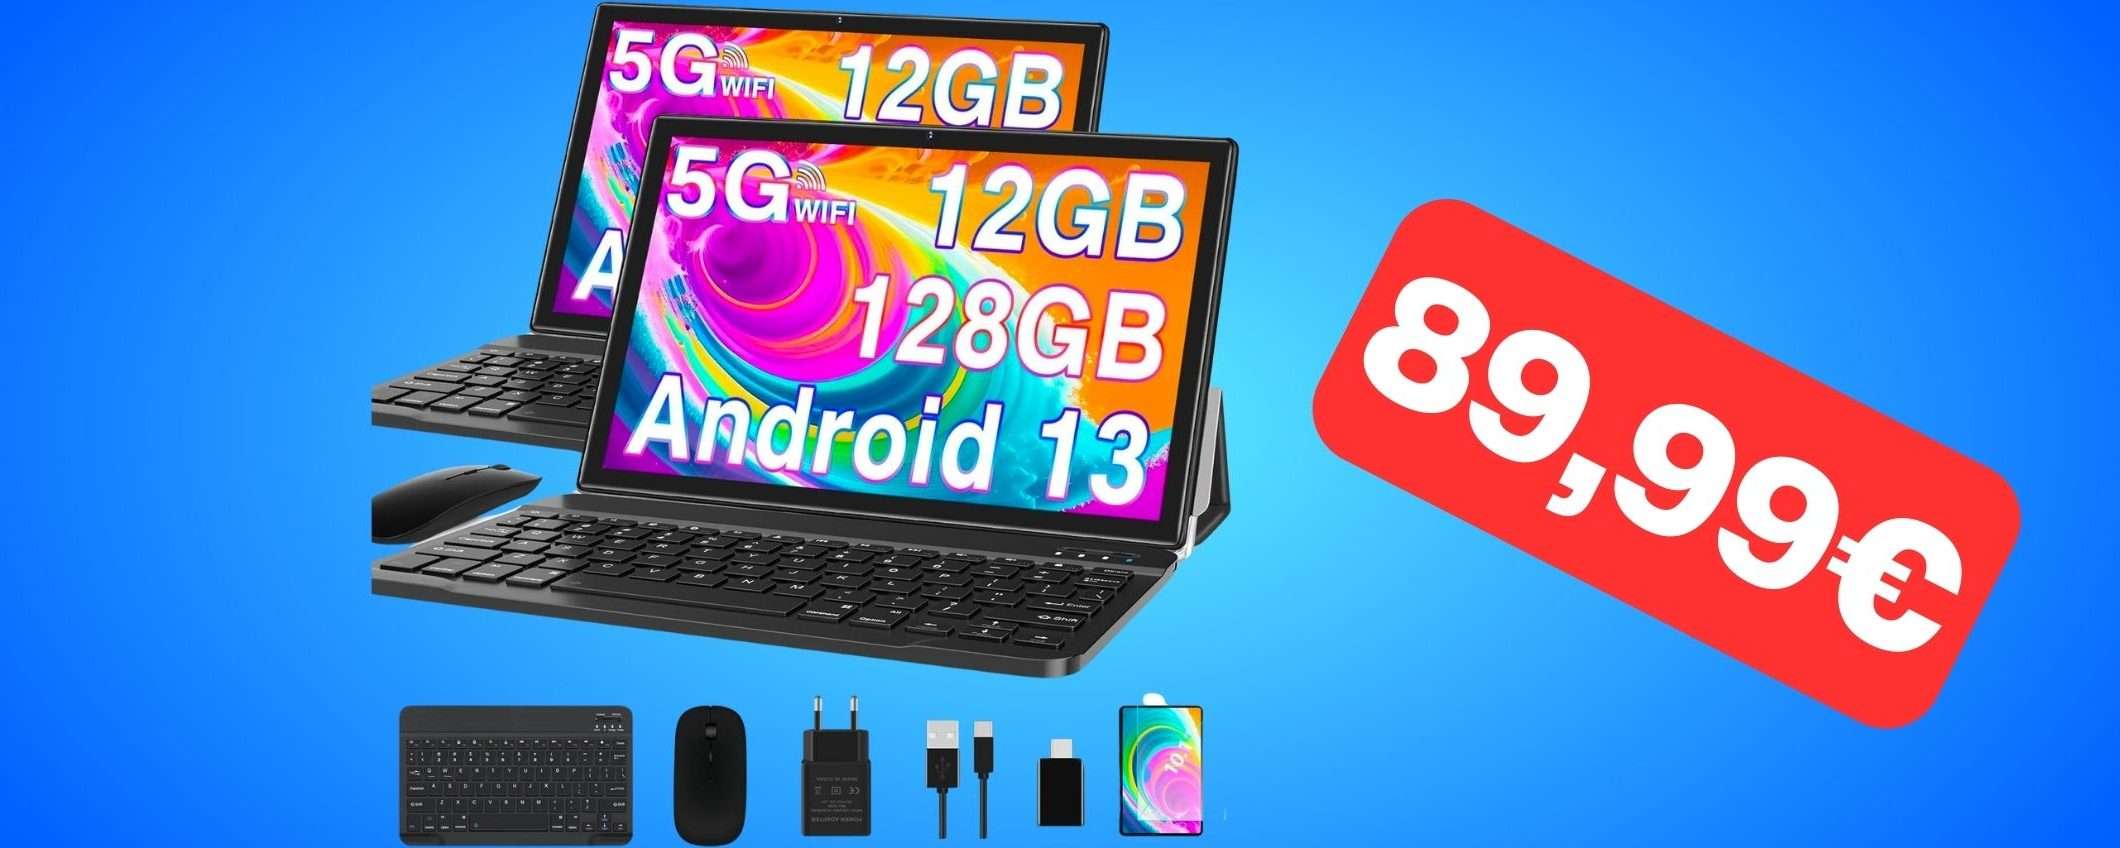 FOLLIA AMAZON: tablet Android super accessoriato a soli 89,99€